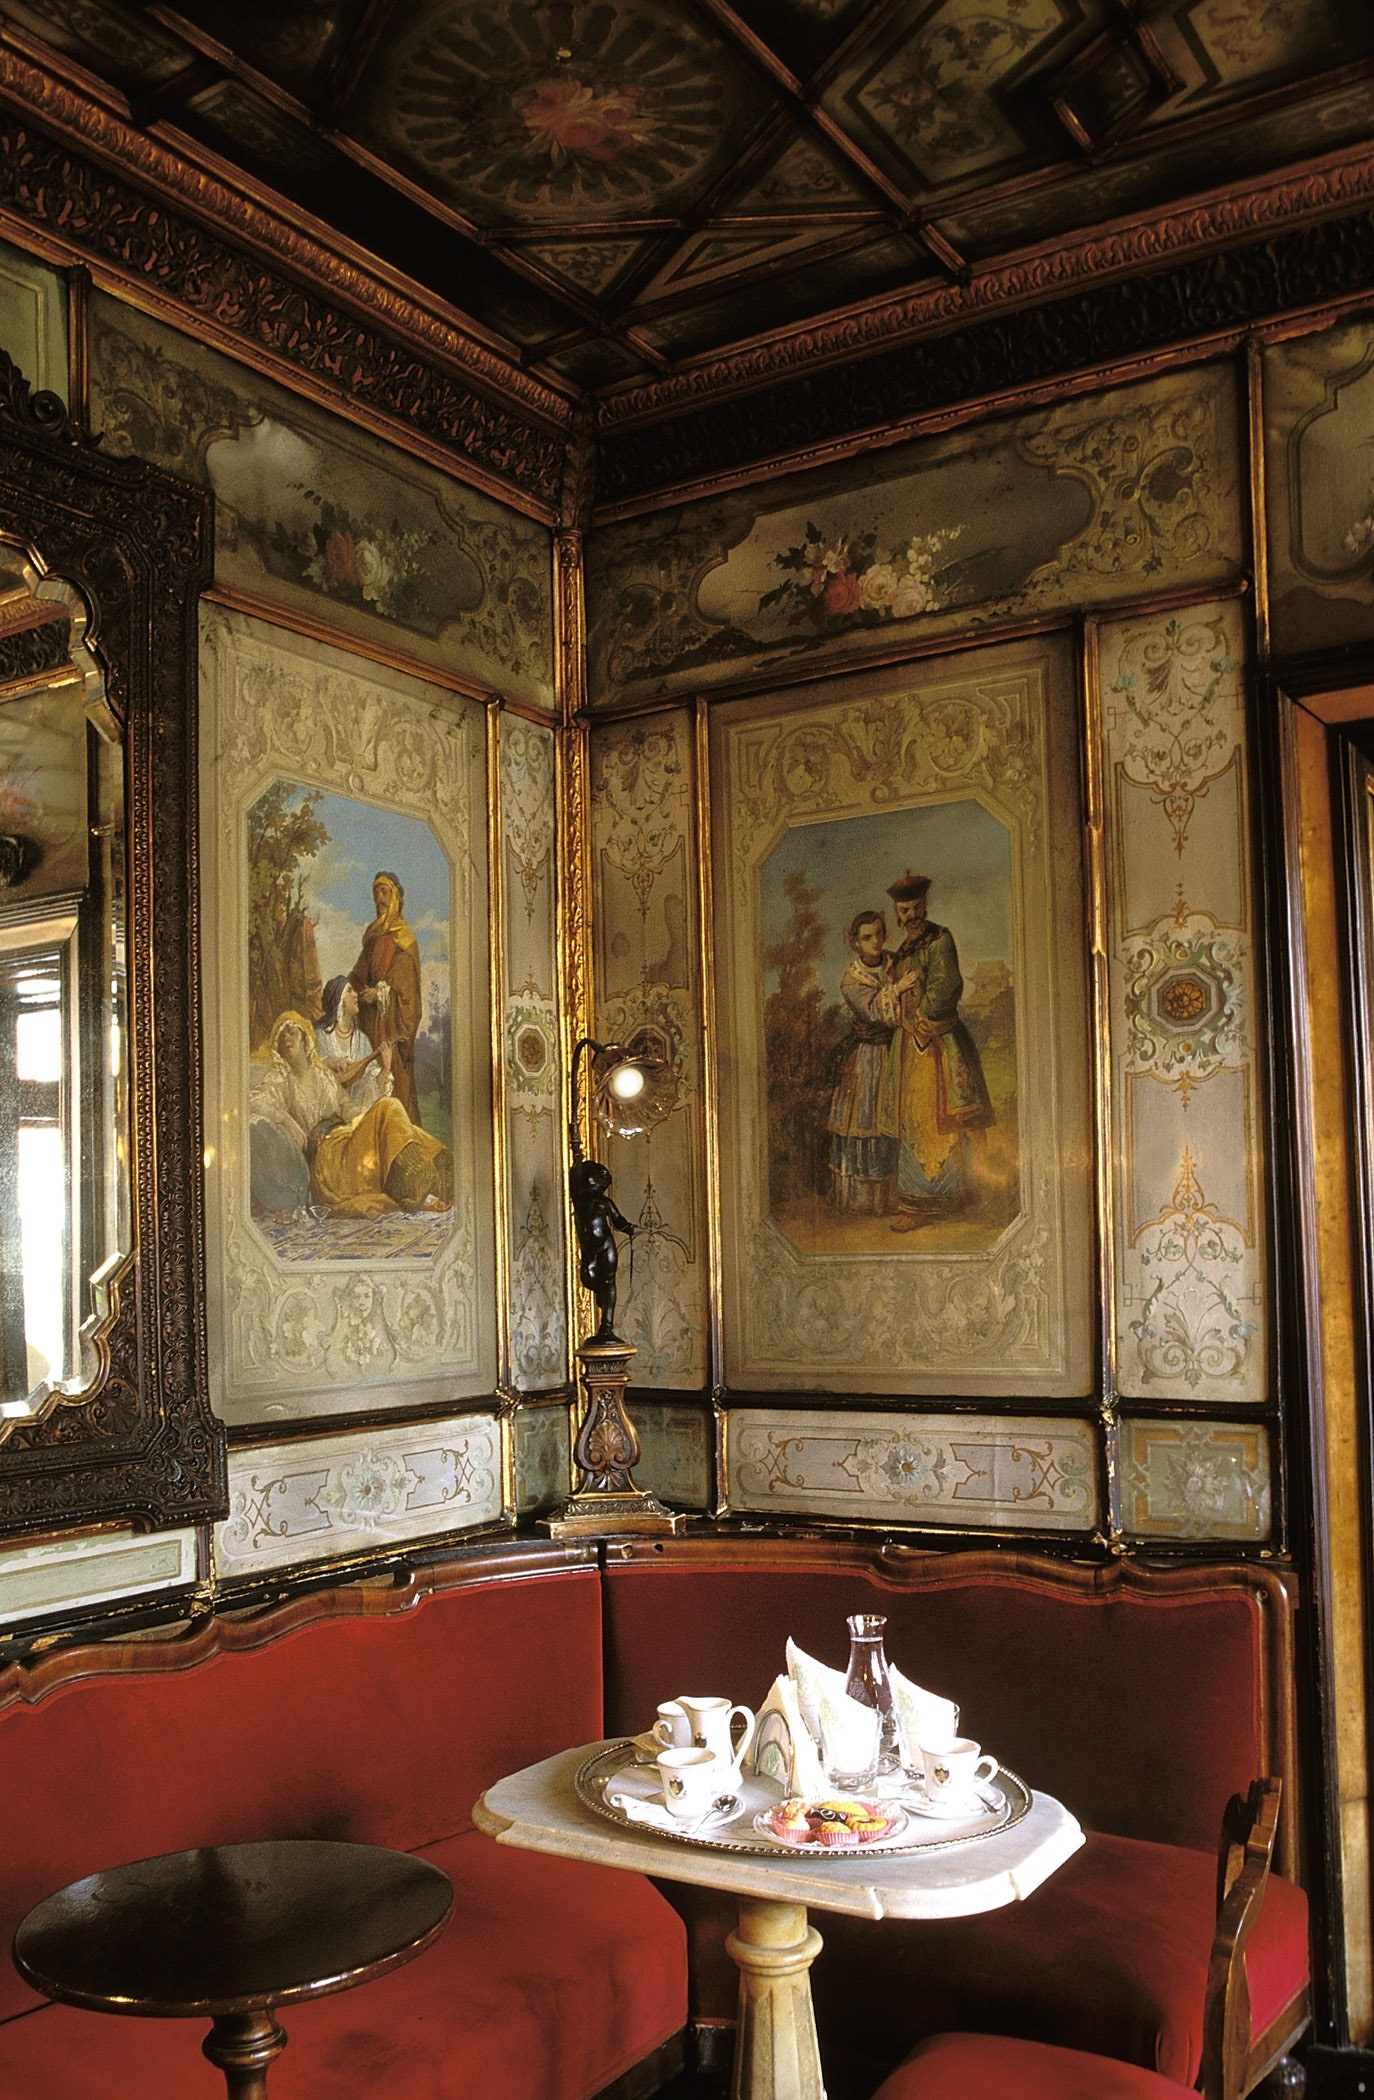 Легендарное кафе “Флориан” в Венеции находится под угрозой закрытия